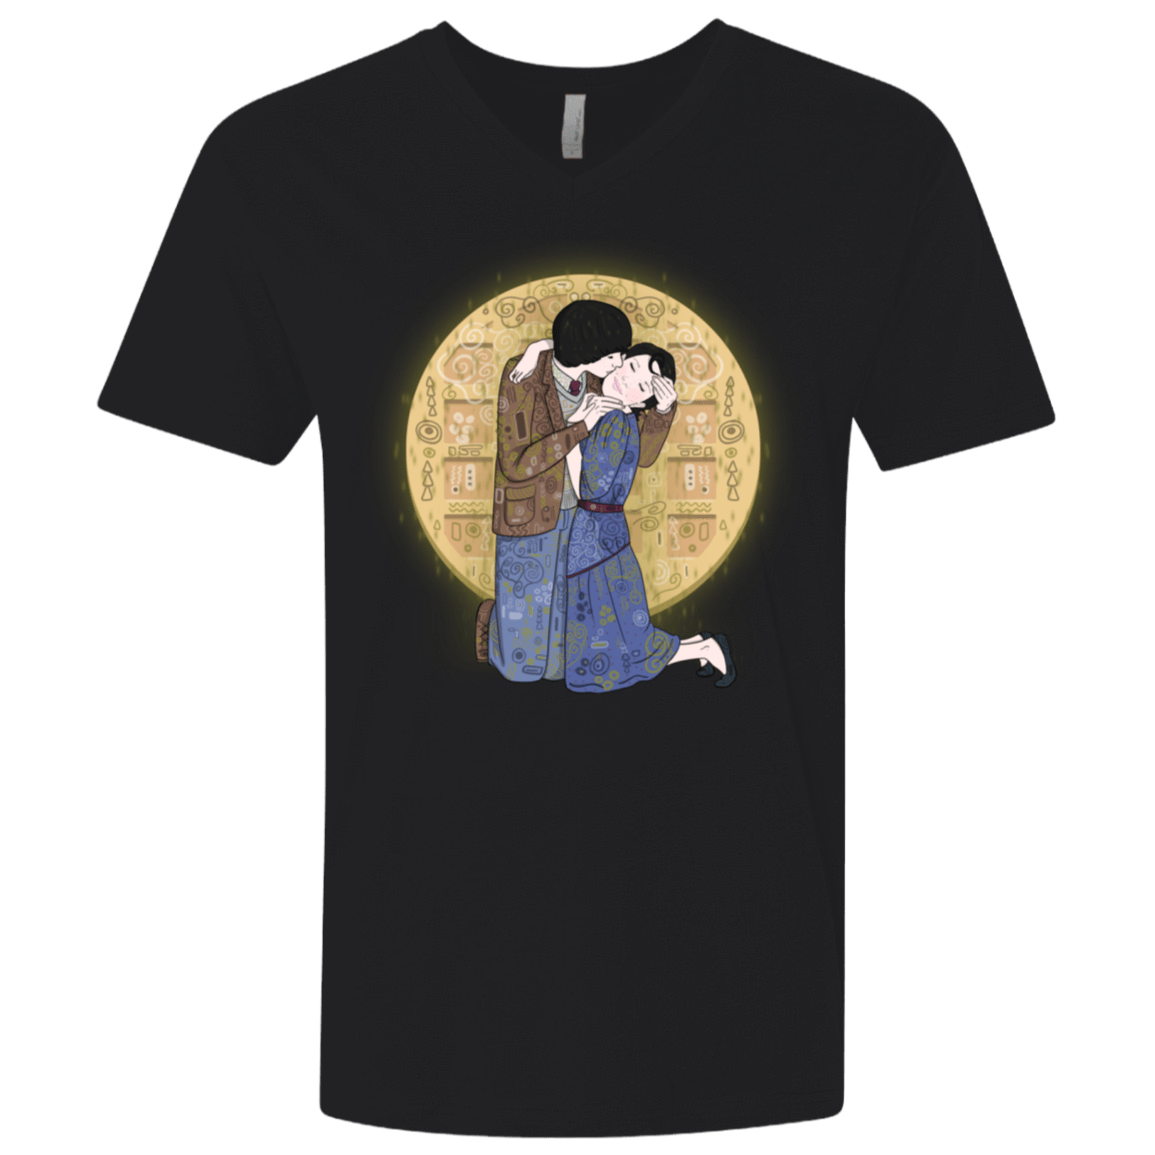 T-Shirts Black / X-Small Stranger Klimt Men's Premium V-Neck